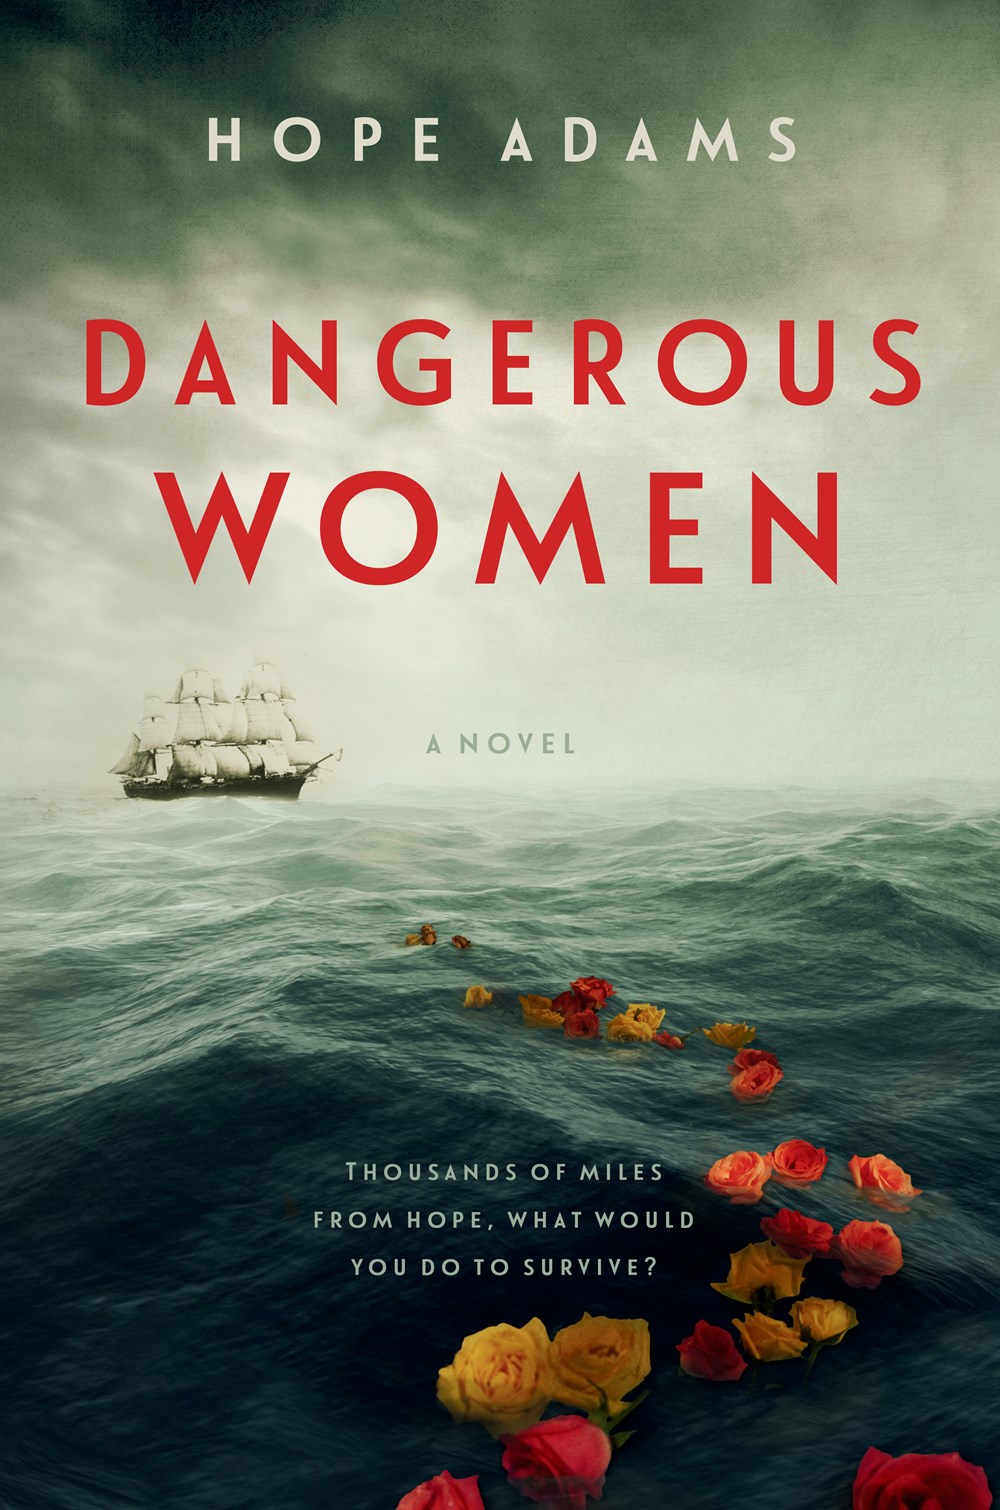 Image for "Dangerous Women"